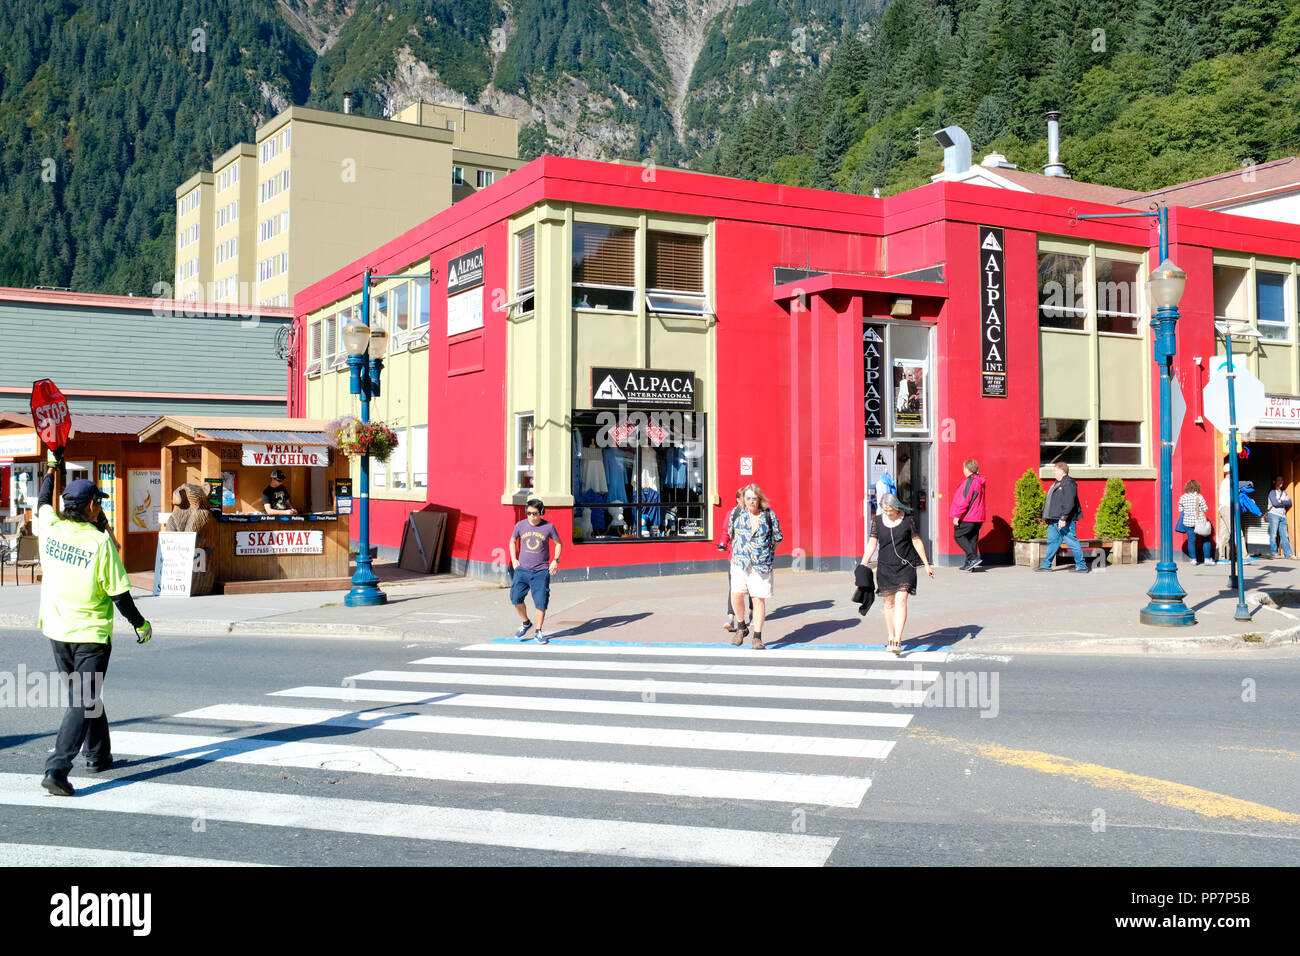 Die Innenstadt von Juneau, Alaska Stockfoto